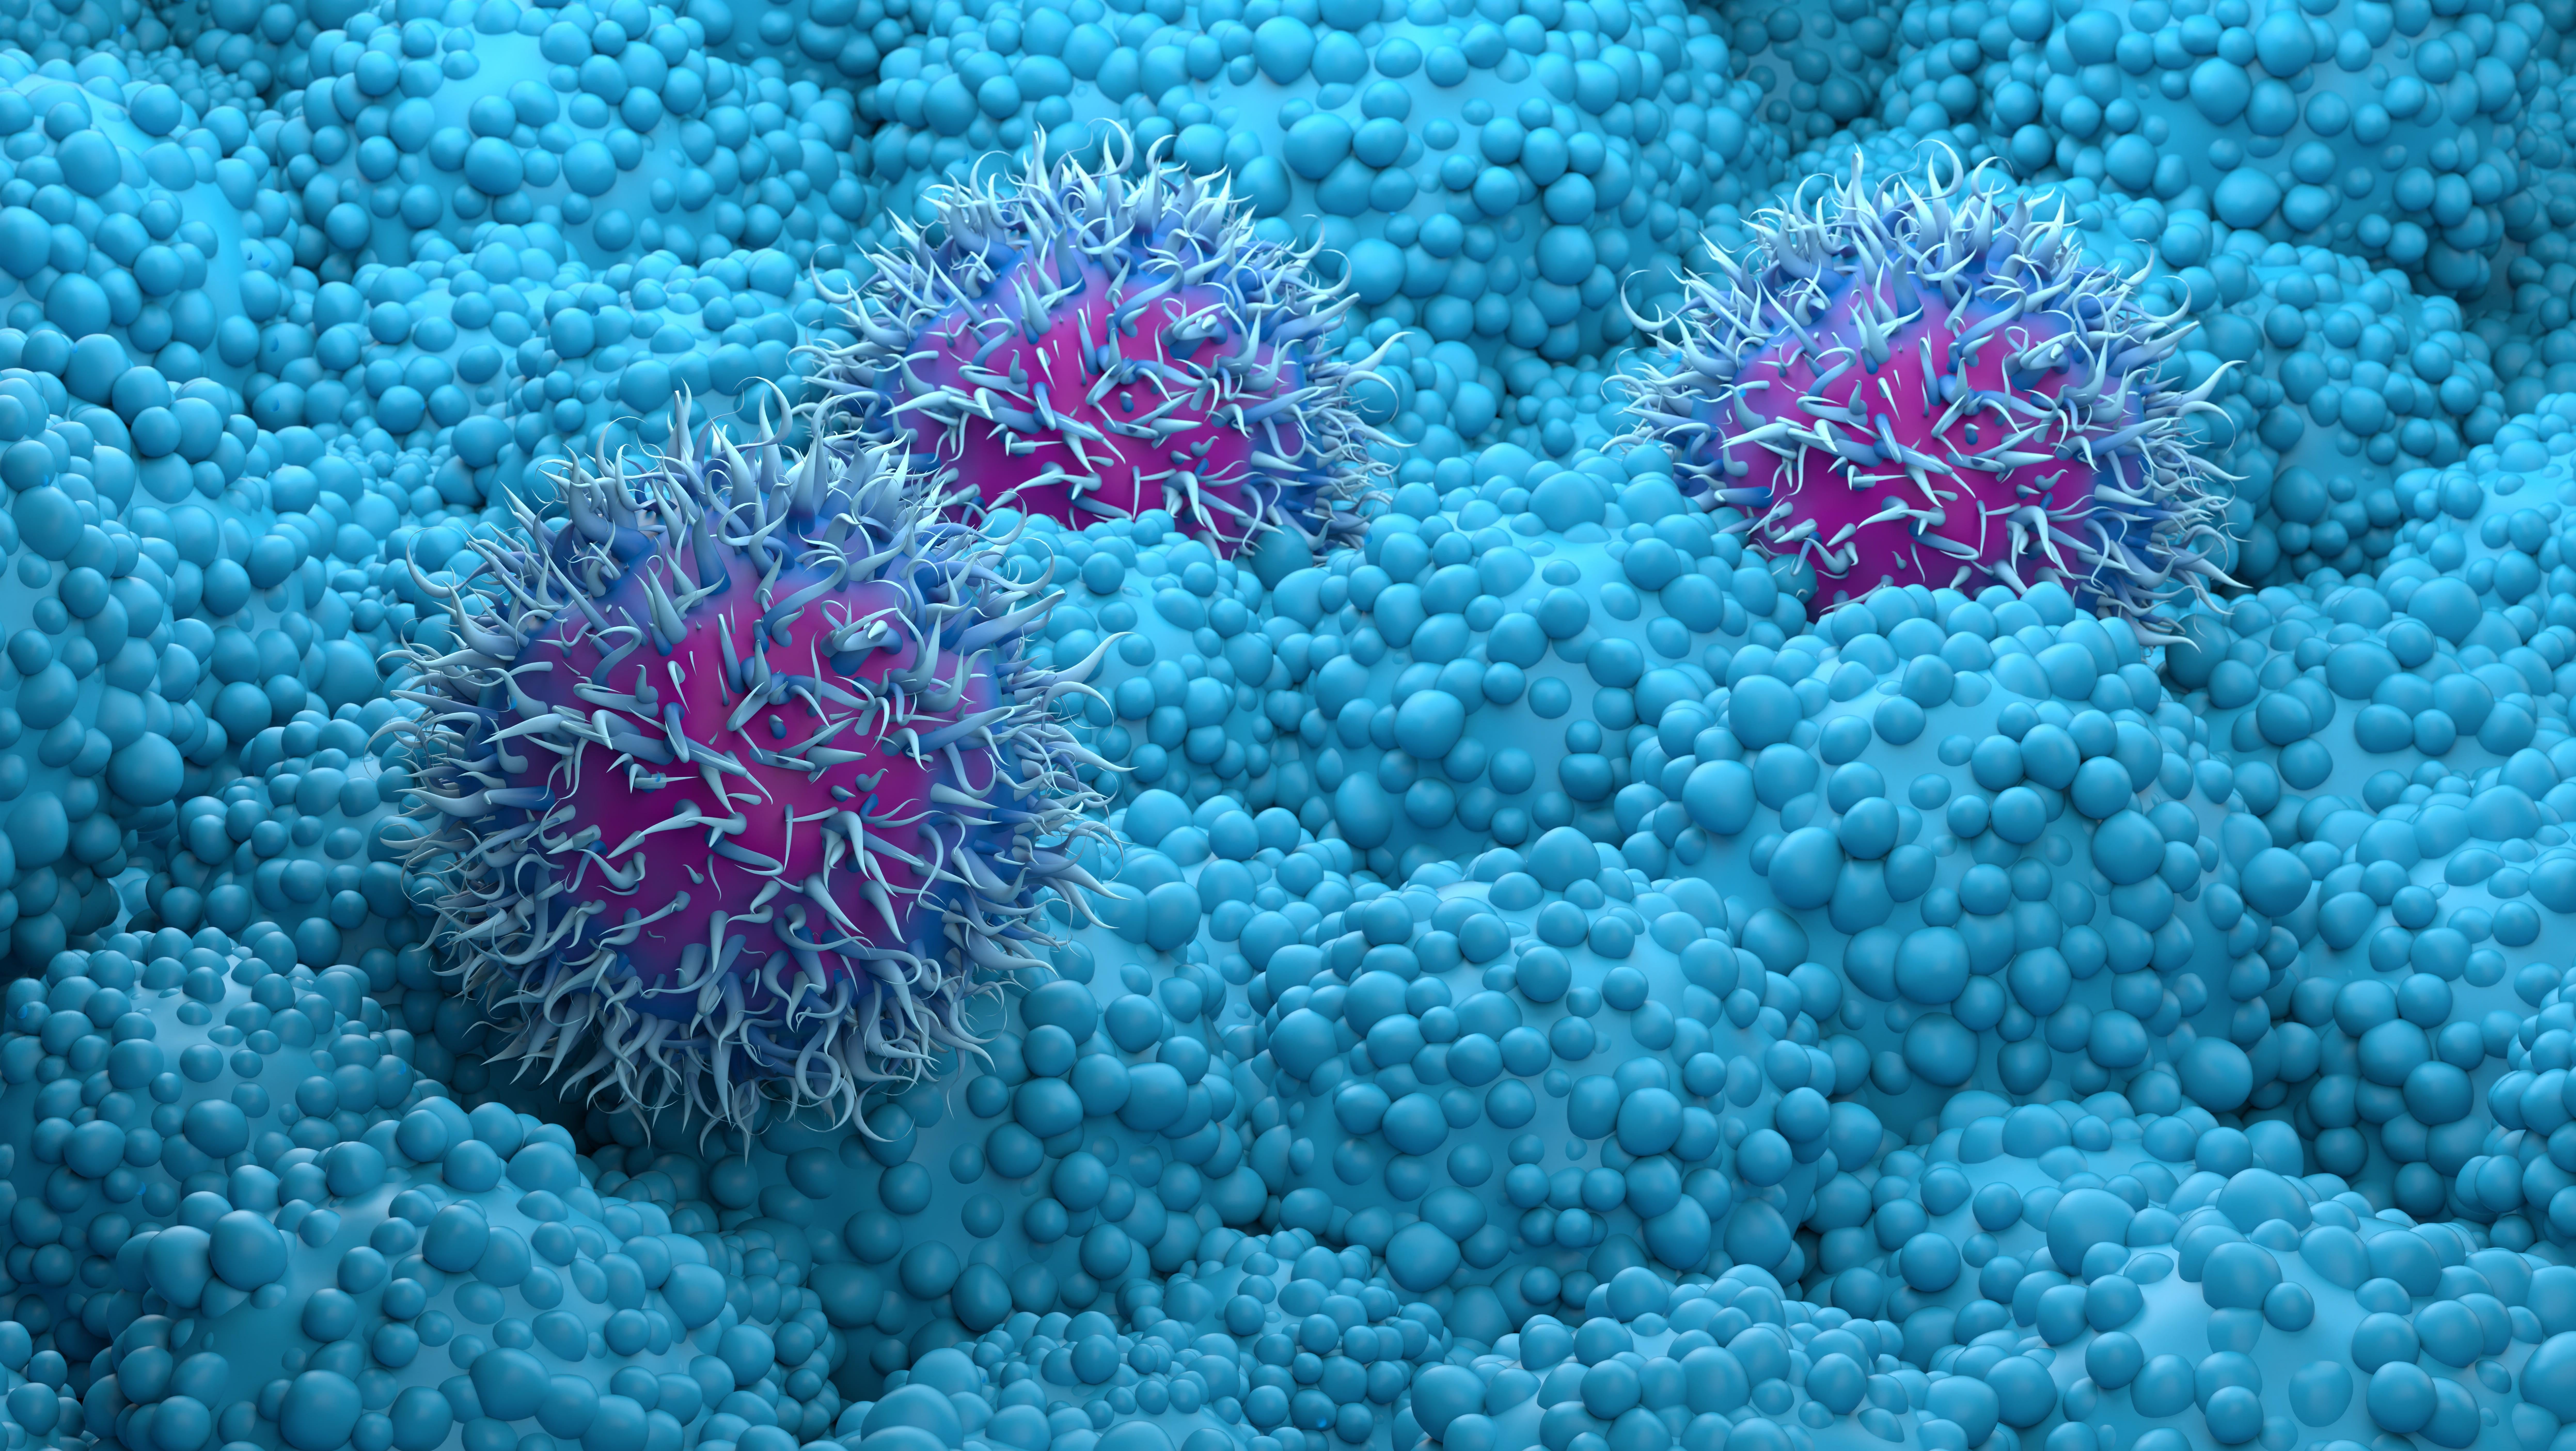 Ученые теперь могут заглянуть внутрь одной раковой клетки